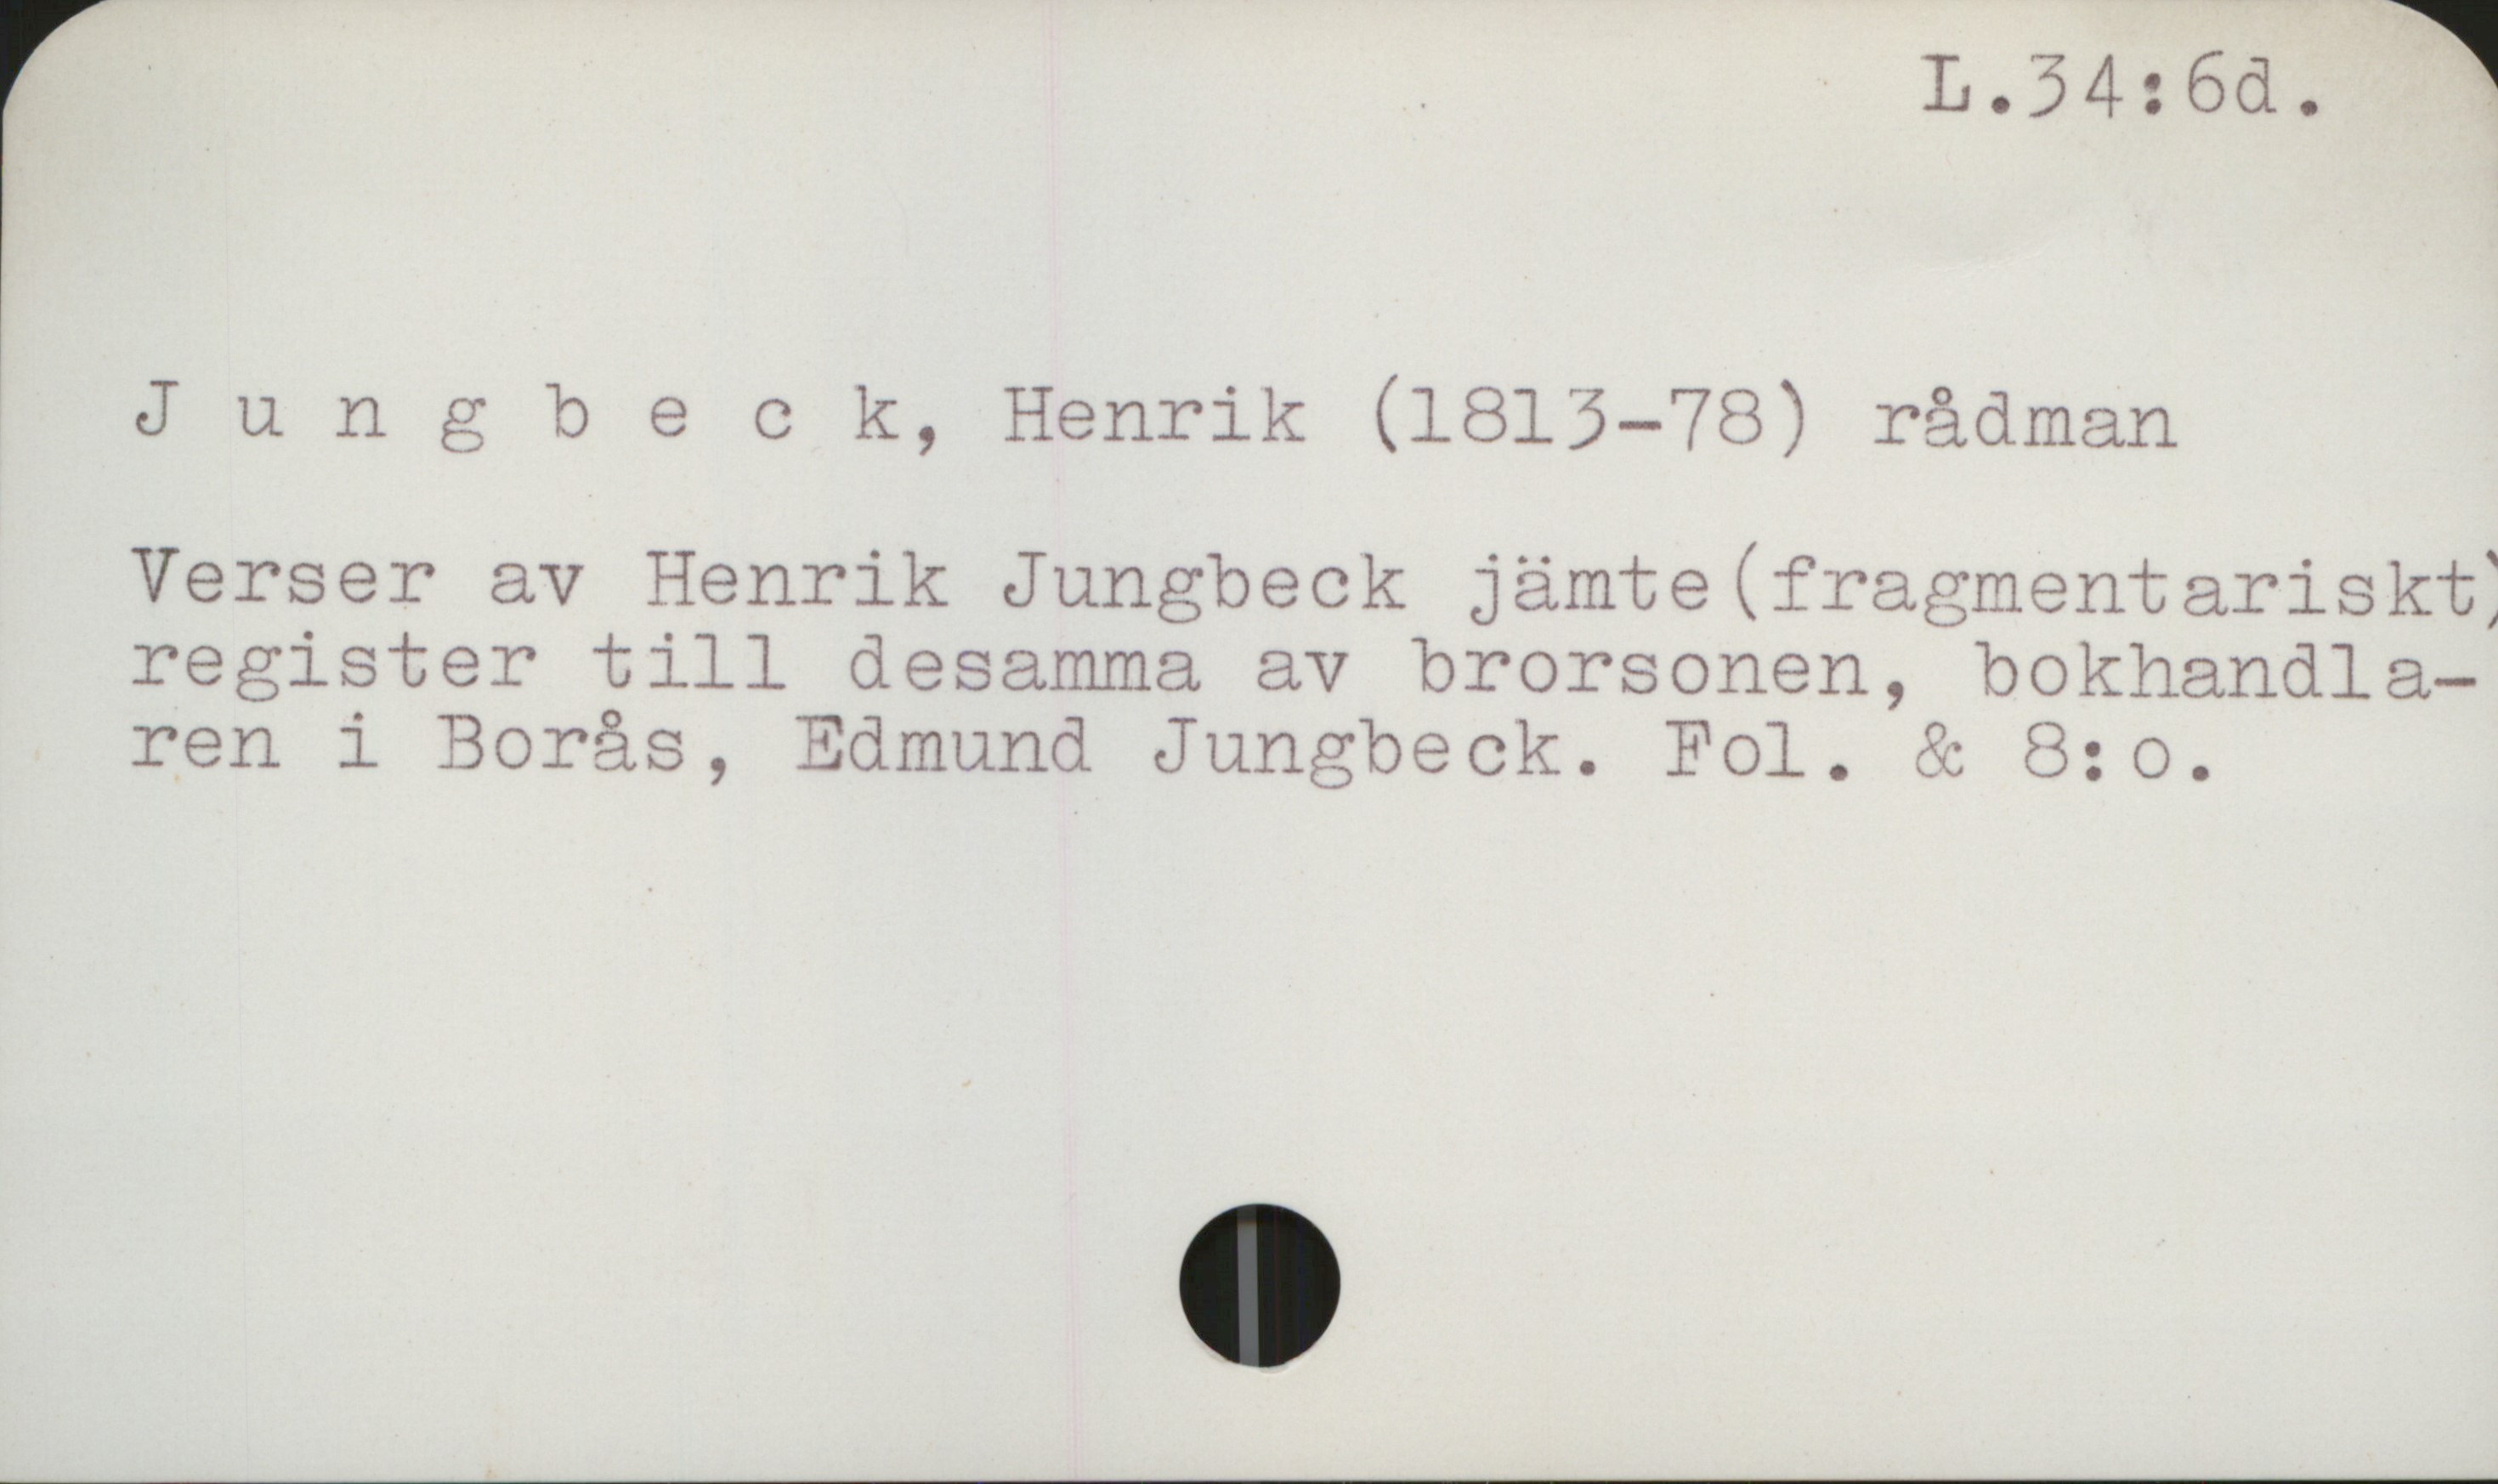 Jungbeck, Henrik (1813-1878) L 34: 6d

Jungbeck, Henrik (1813-78) rådman

Verser av Henrik Jungbeck jämte (fragmentariskt)
register till desamma av brorsonen, bokhandlaren 
i Borås, Edmund Jungbeck.                             Fol. & 8:o